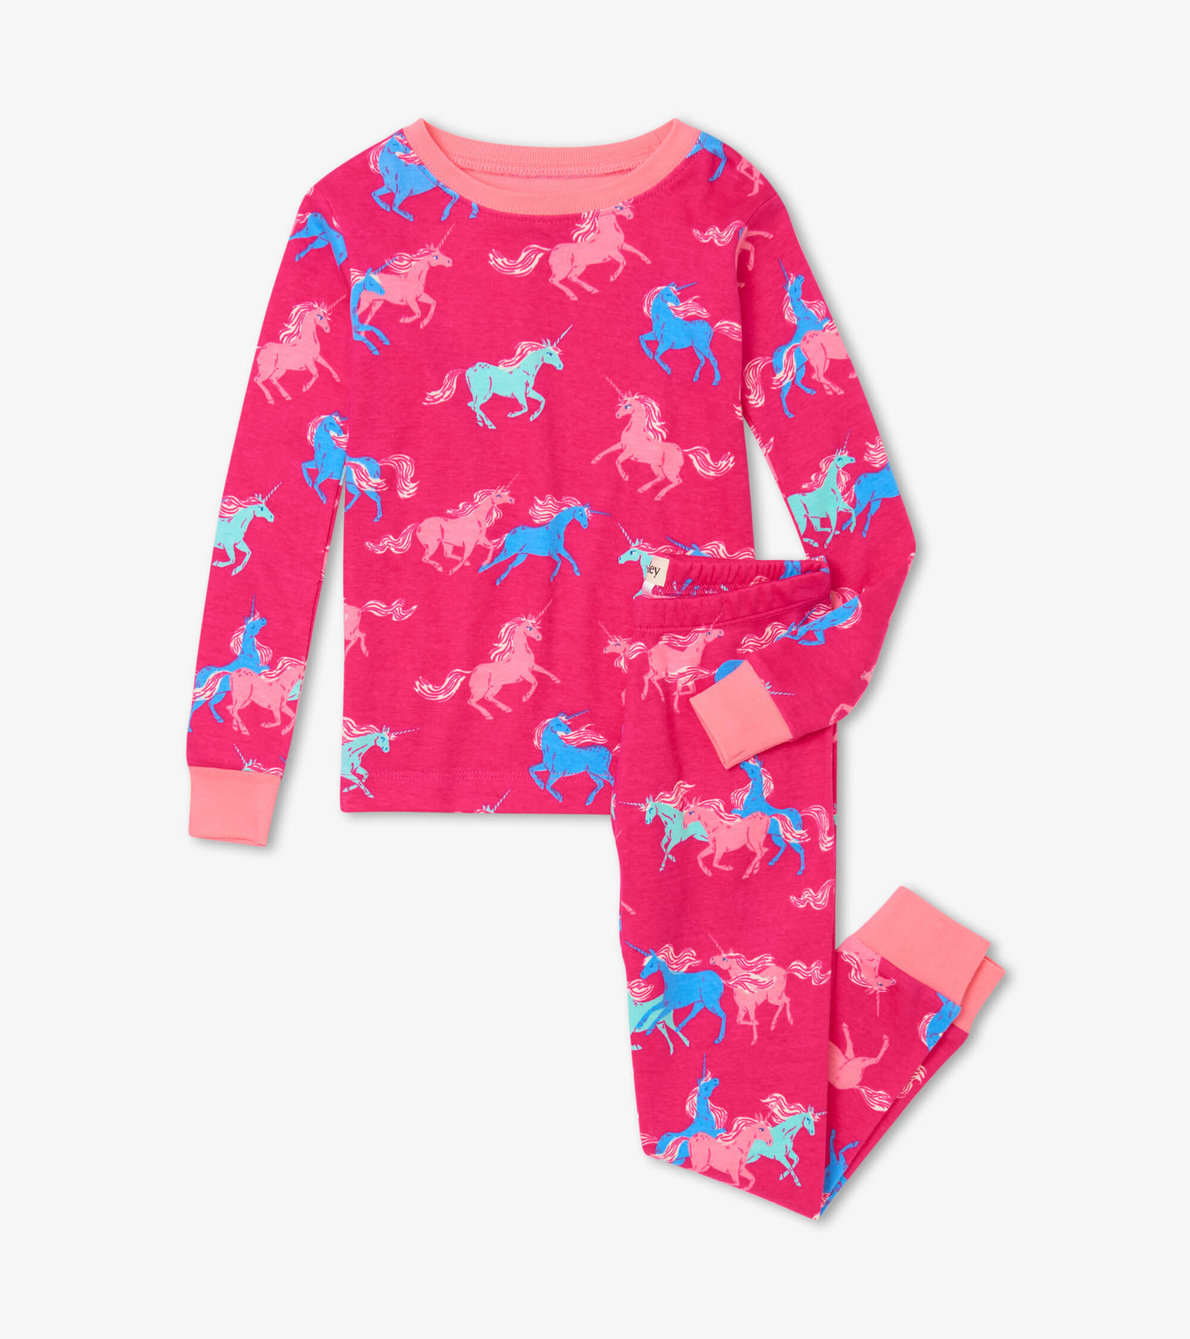 View larger image of Frolicking Unicorns Organic Cotton Pajama Set